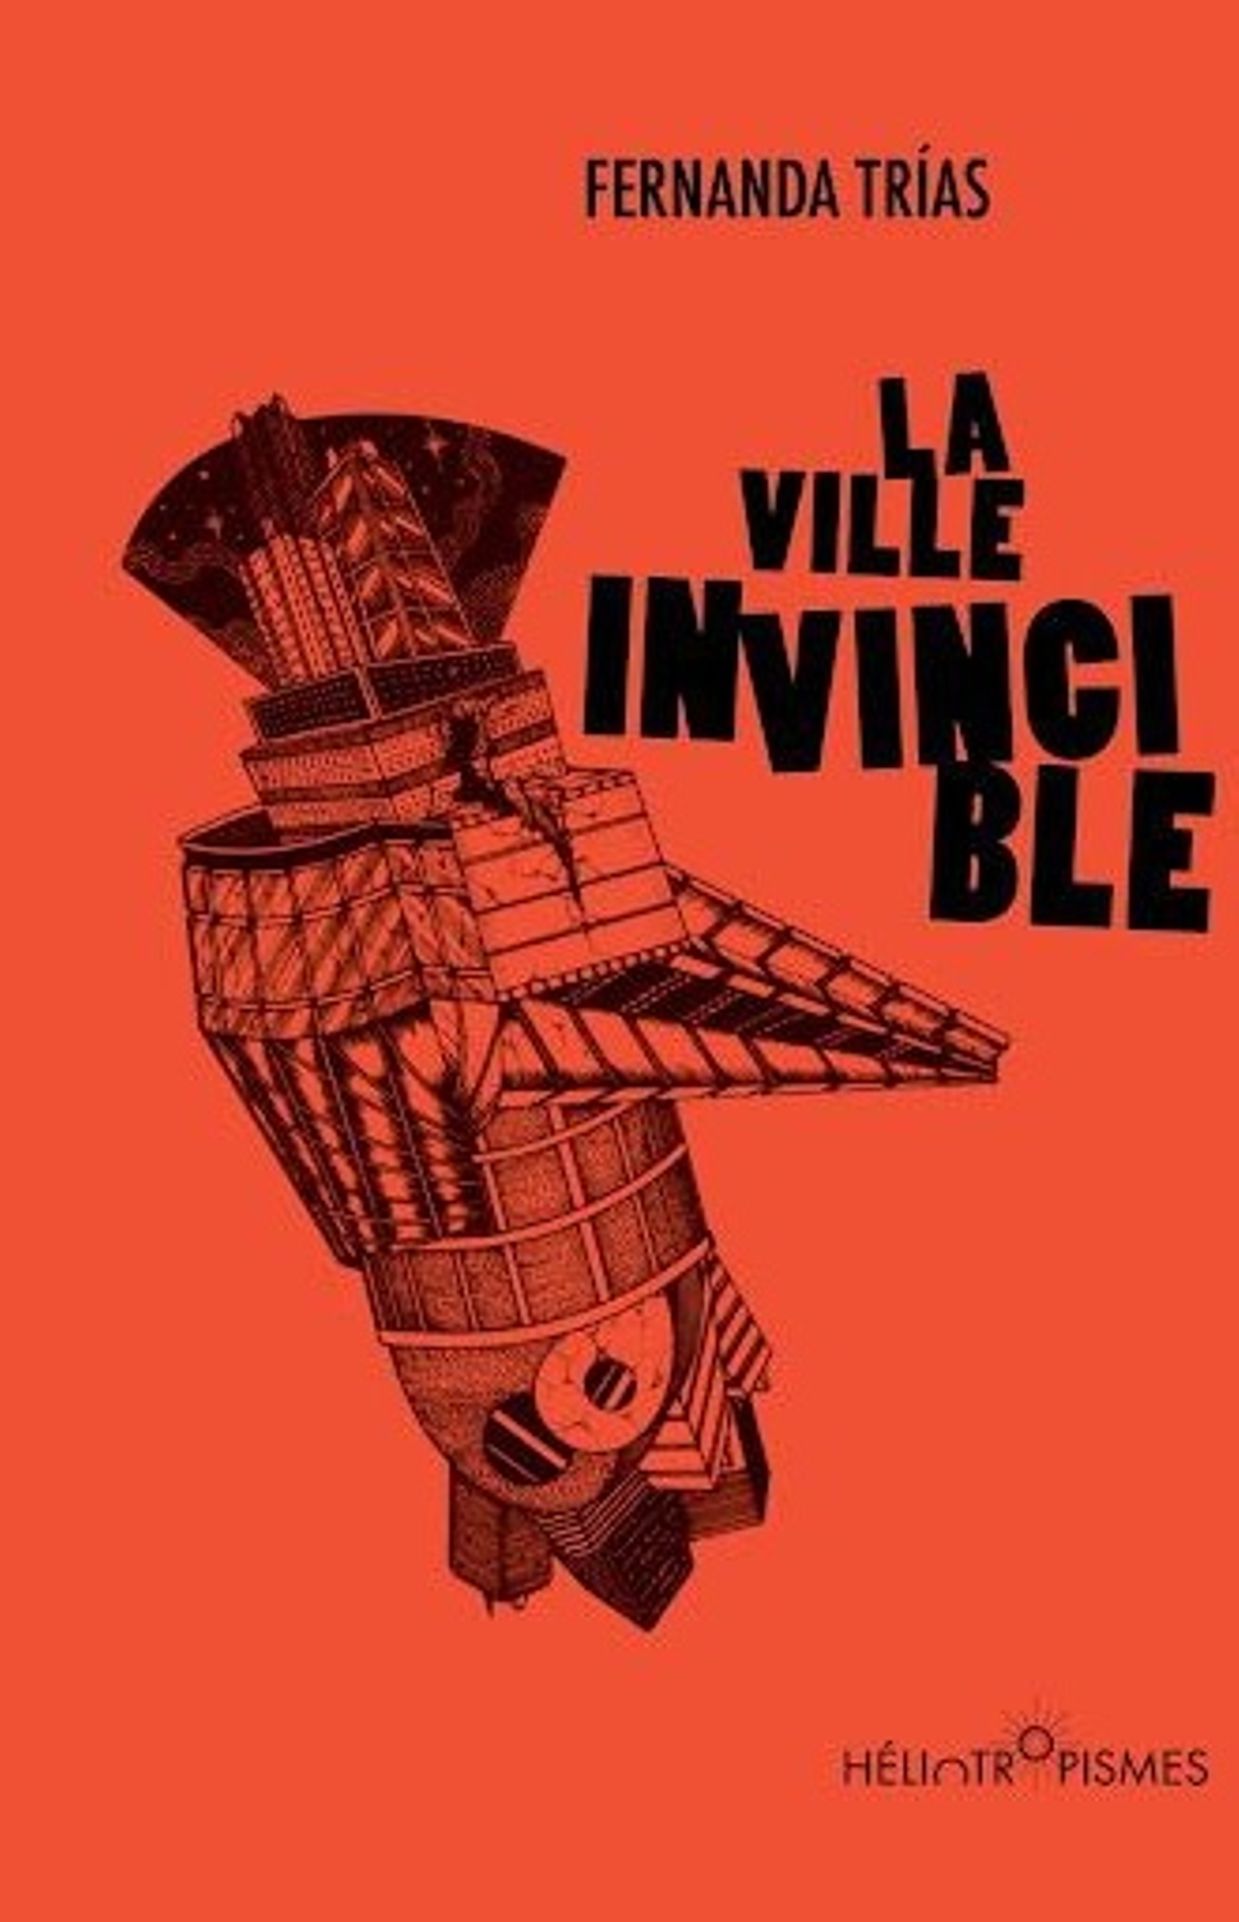 Première de couverture du livre " La ville invincible" de Fernanda Trias. 